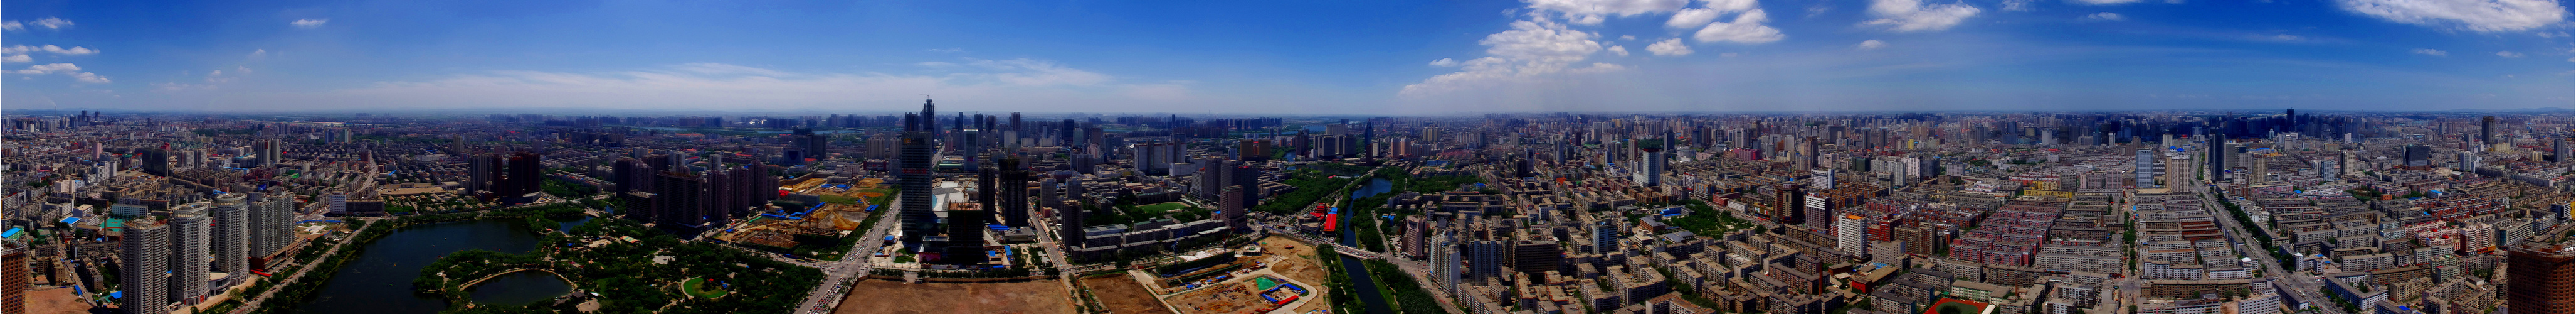 360° - Panorama - High Noon - Shenyang - Lianoning Capital